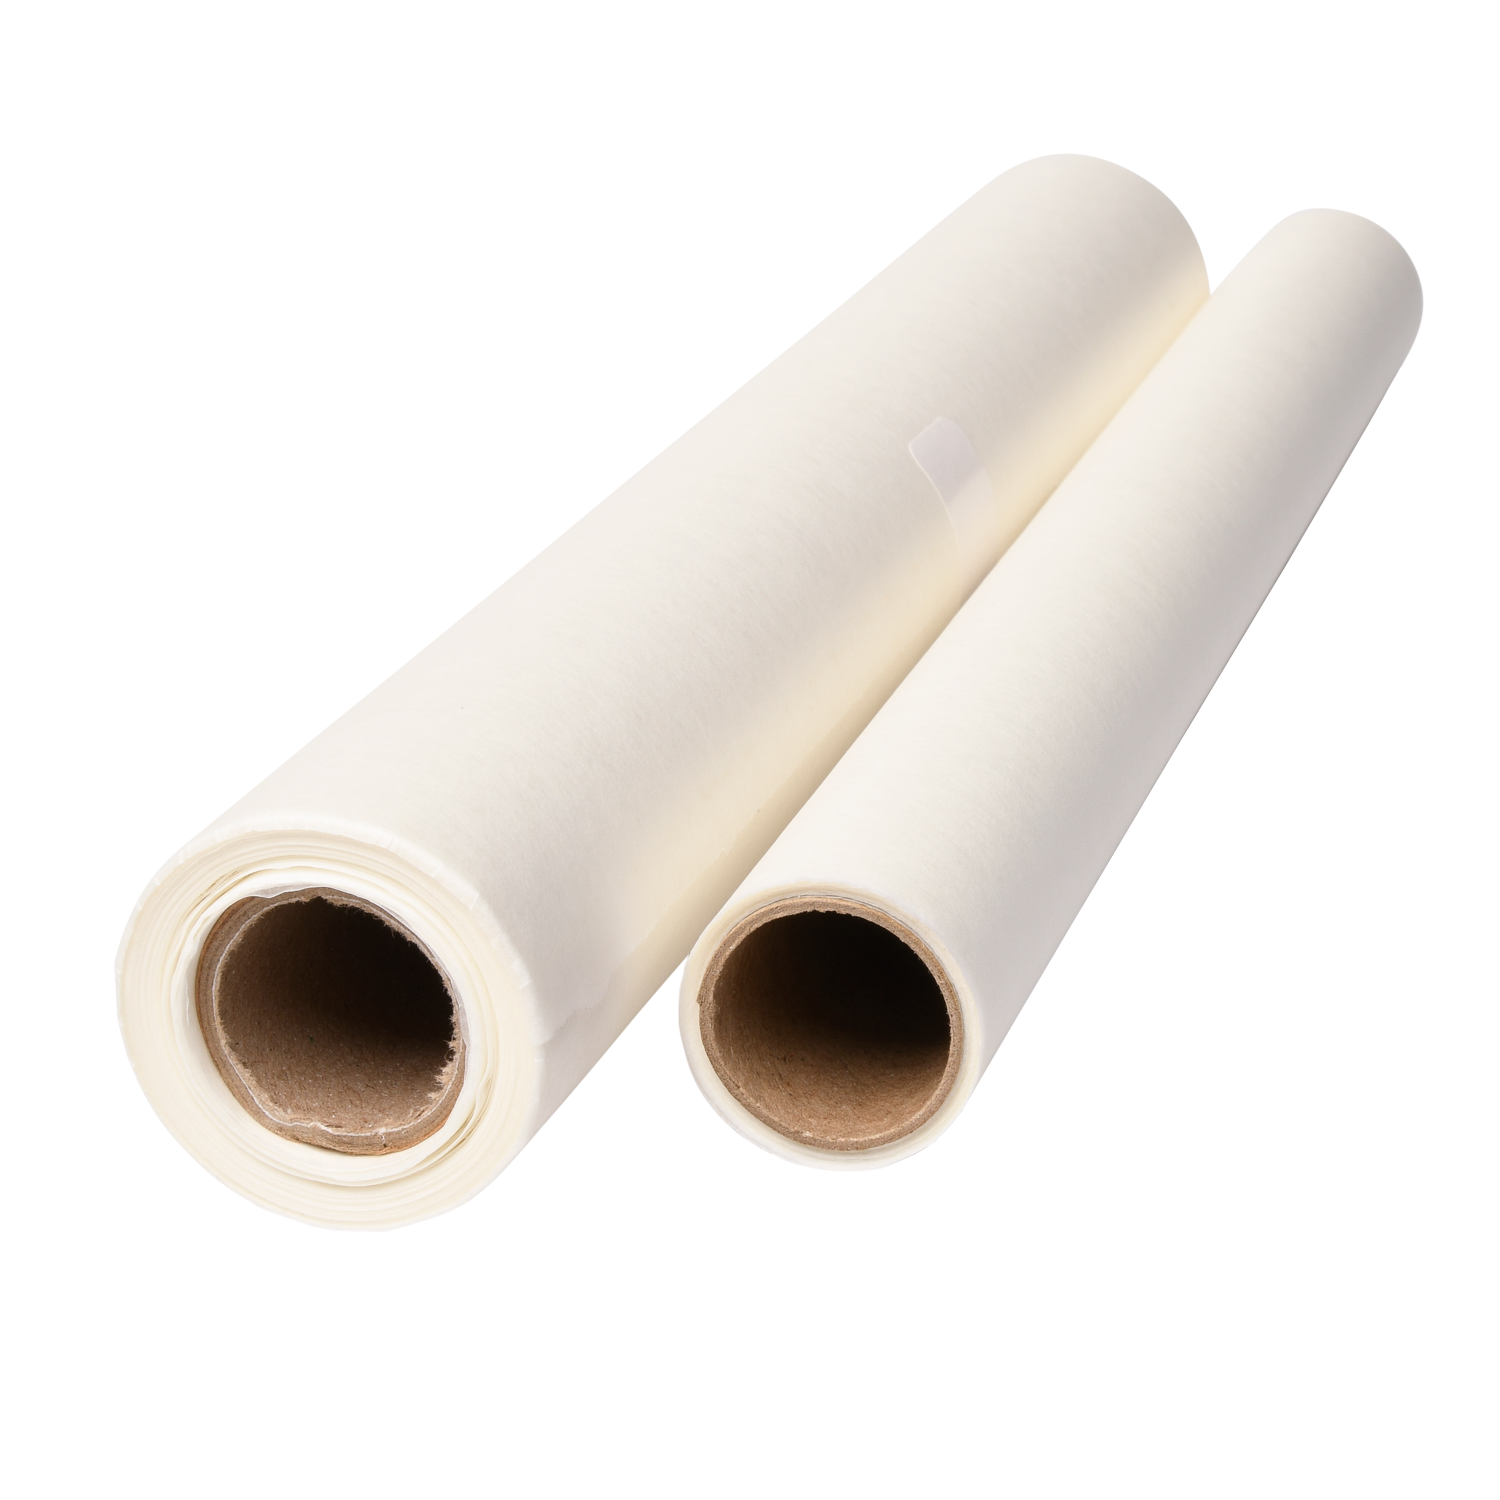 Protective Paper Roll - Artesprix